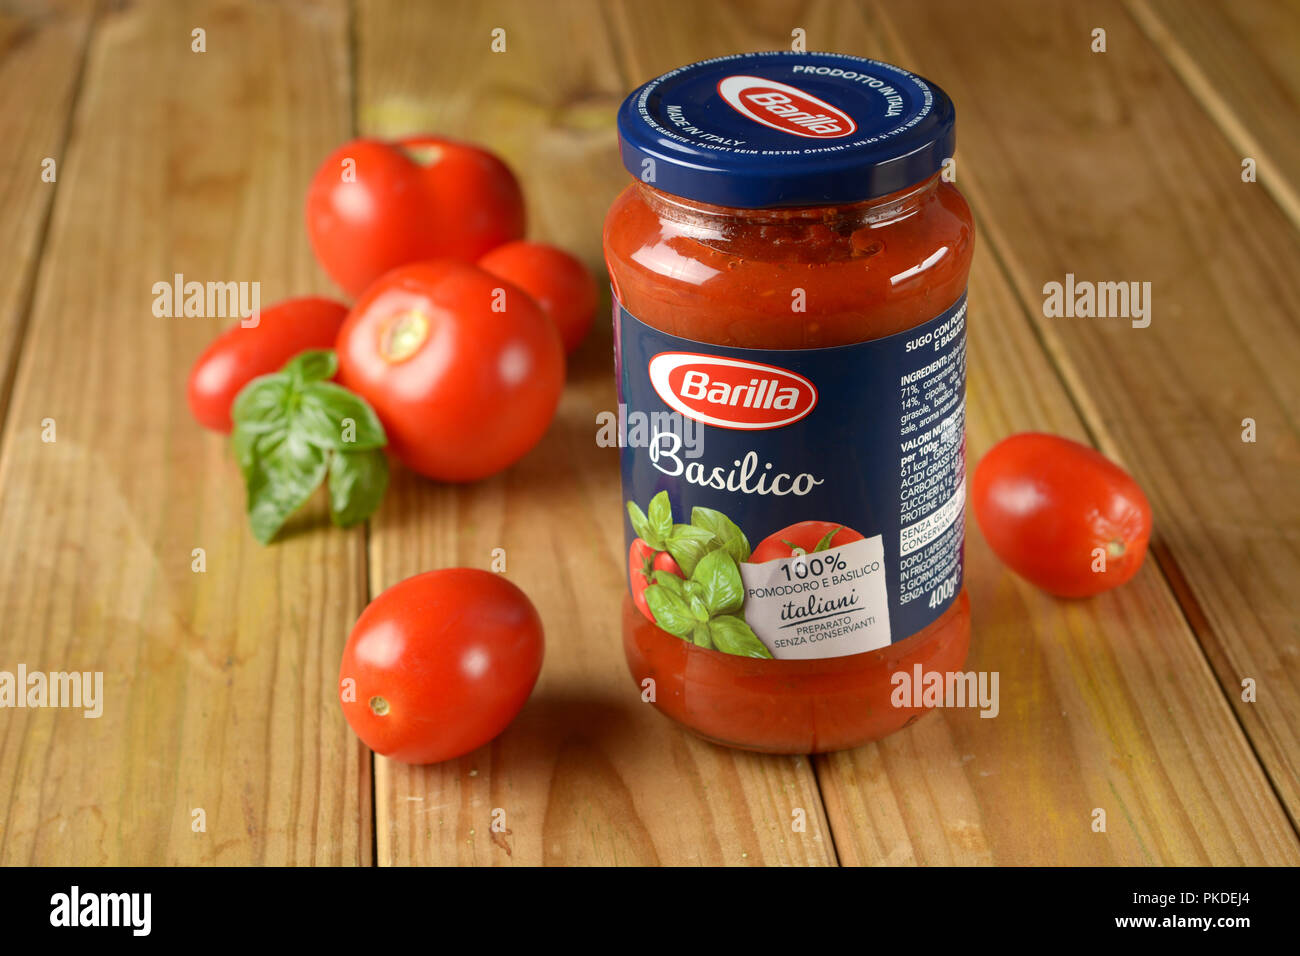 Pot en verre de sauce tomate au basilic - produit industriel italien - pour  un usage éditorial uniquement - libre Photo Stock - Alamy